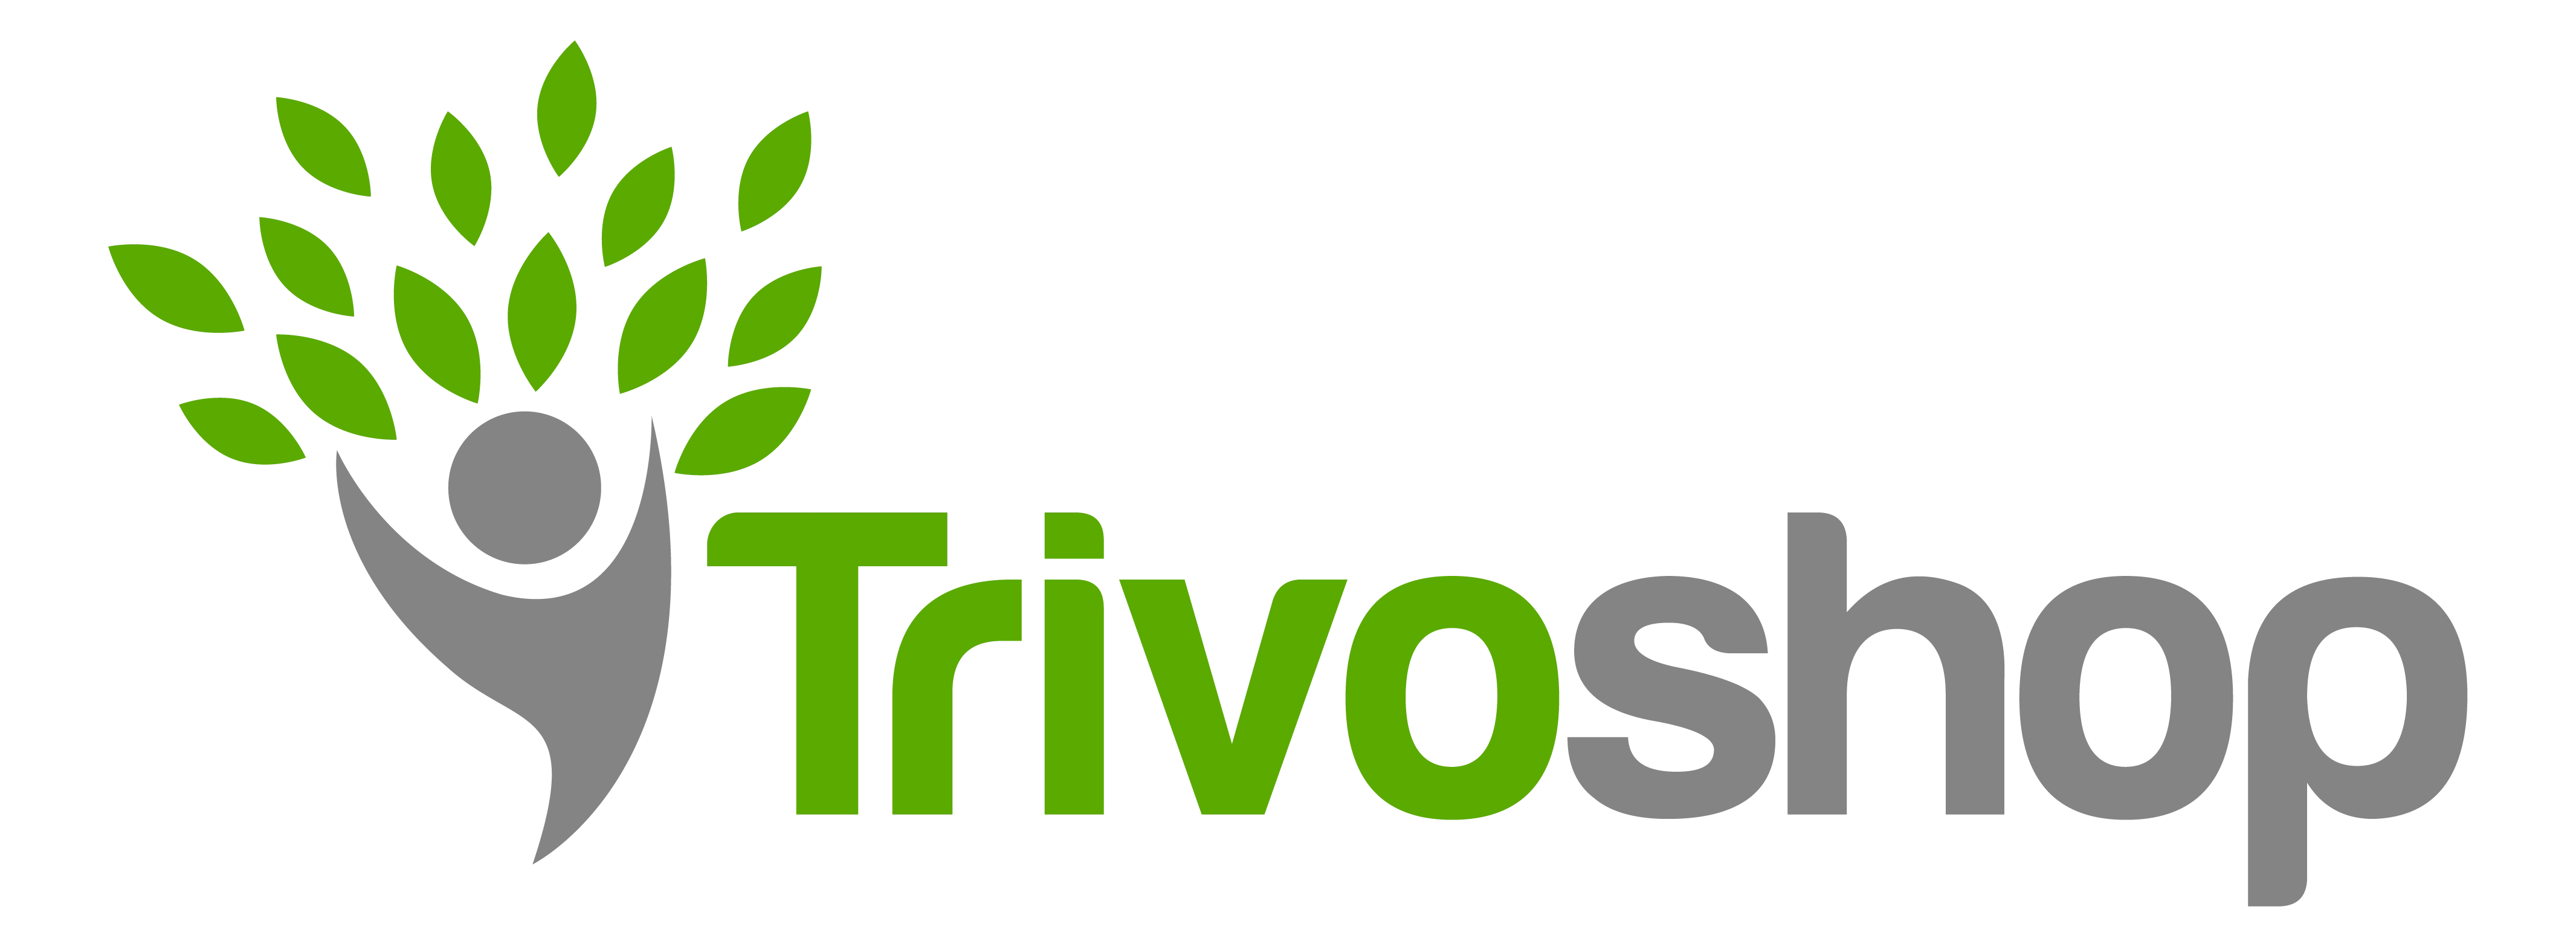 trivoshop.com